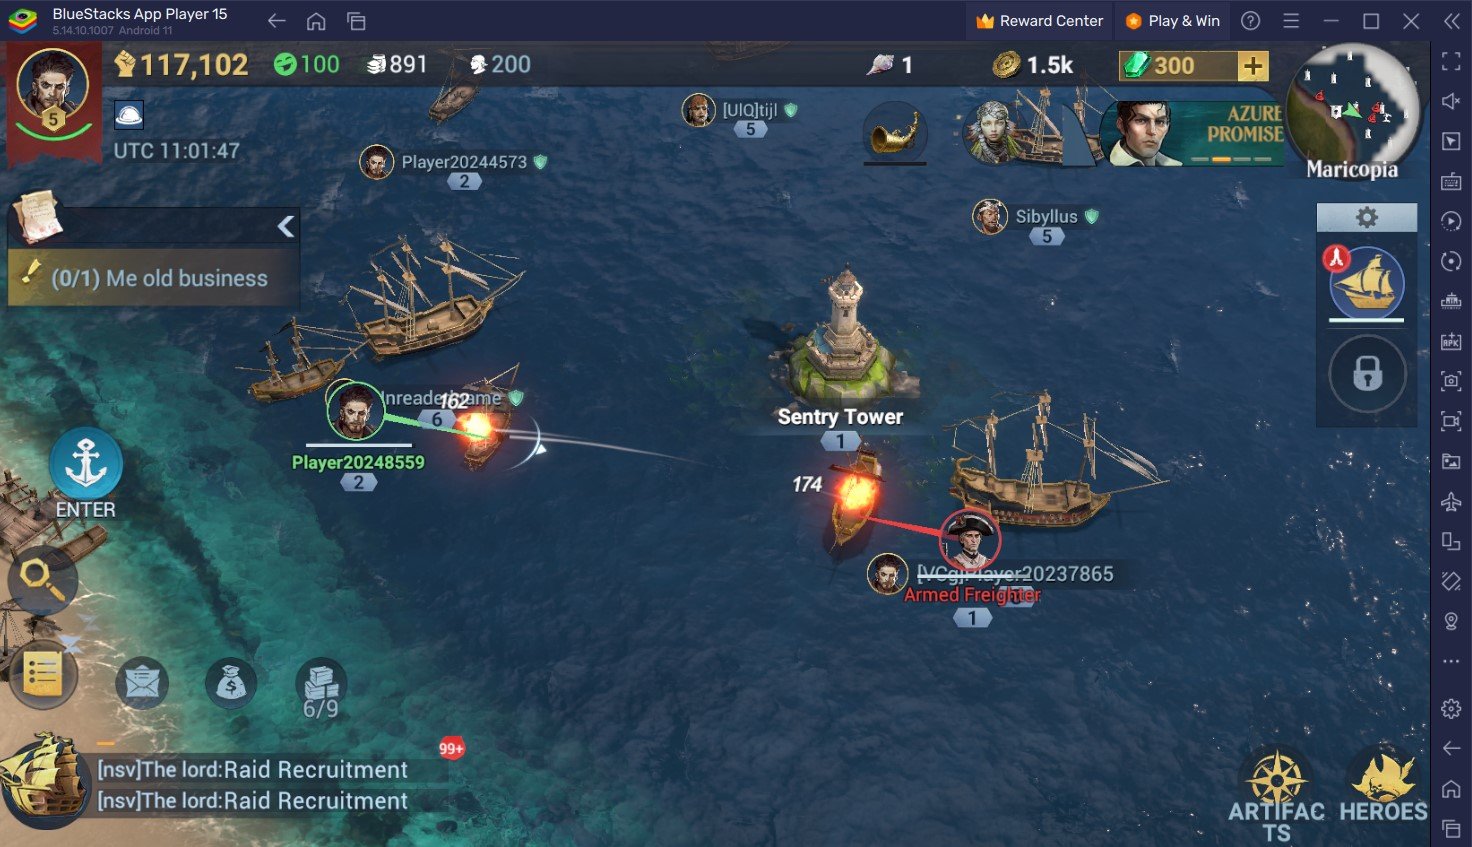 Panduan Pemula Sea of Conquest: Pirate War – Panduan Menyeluruh untuk Semua Sistem Gameplay